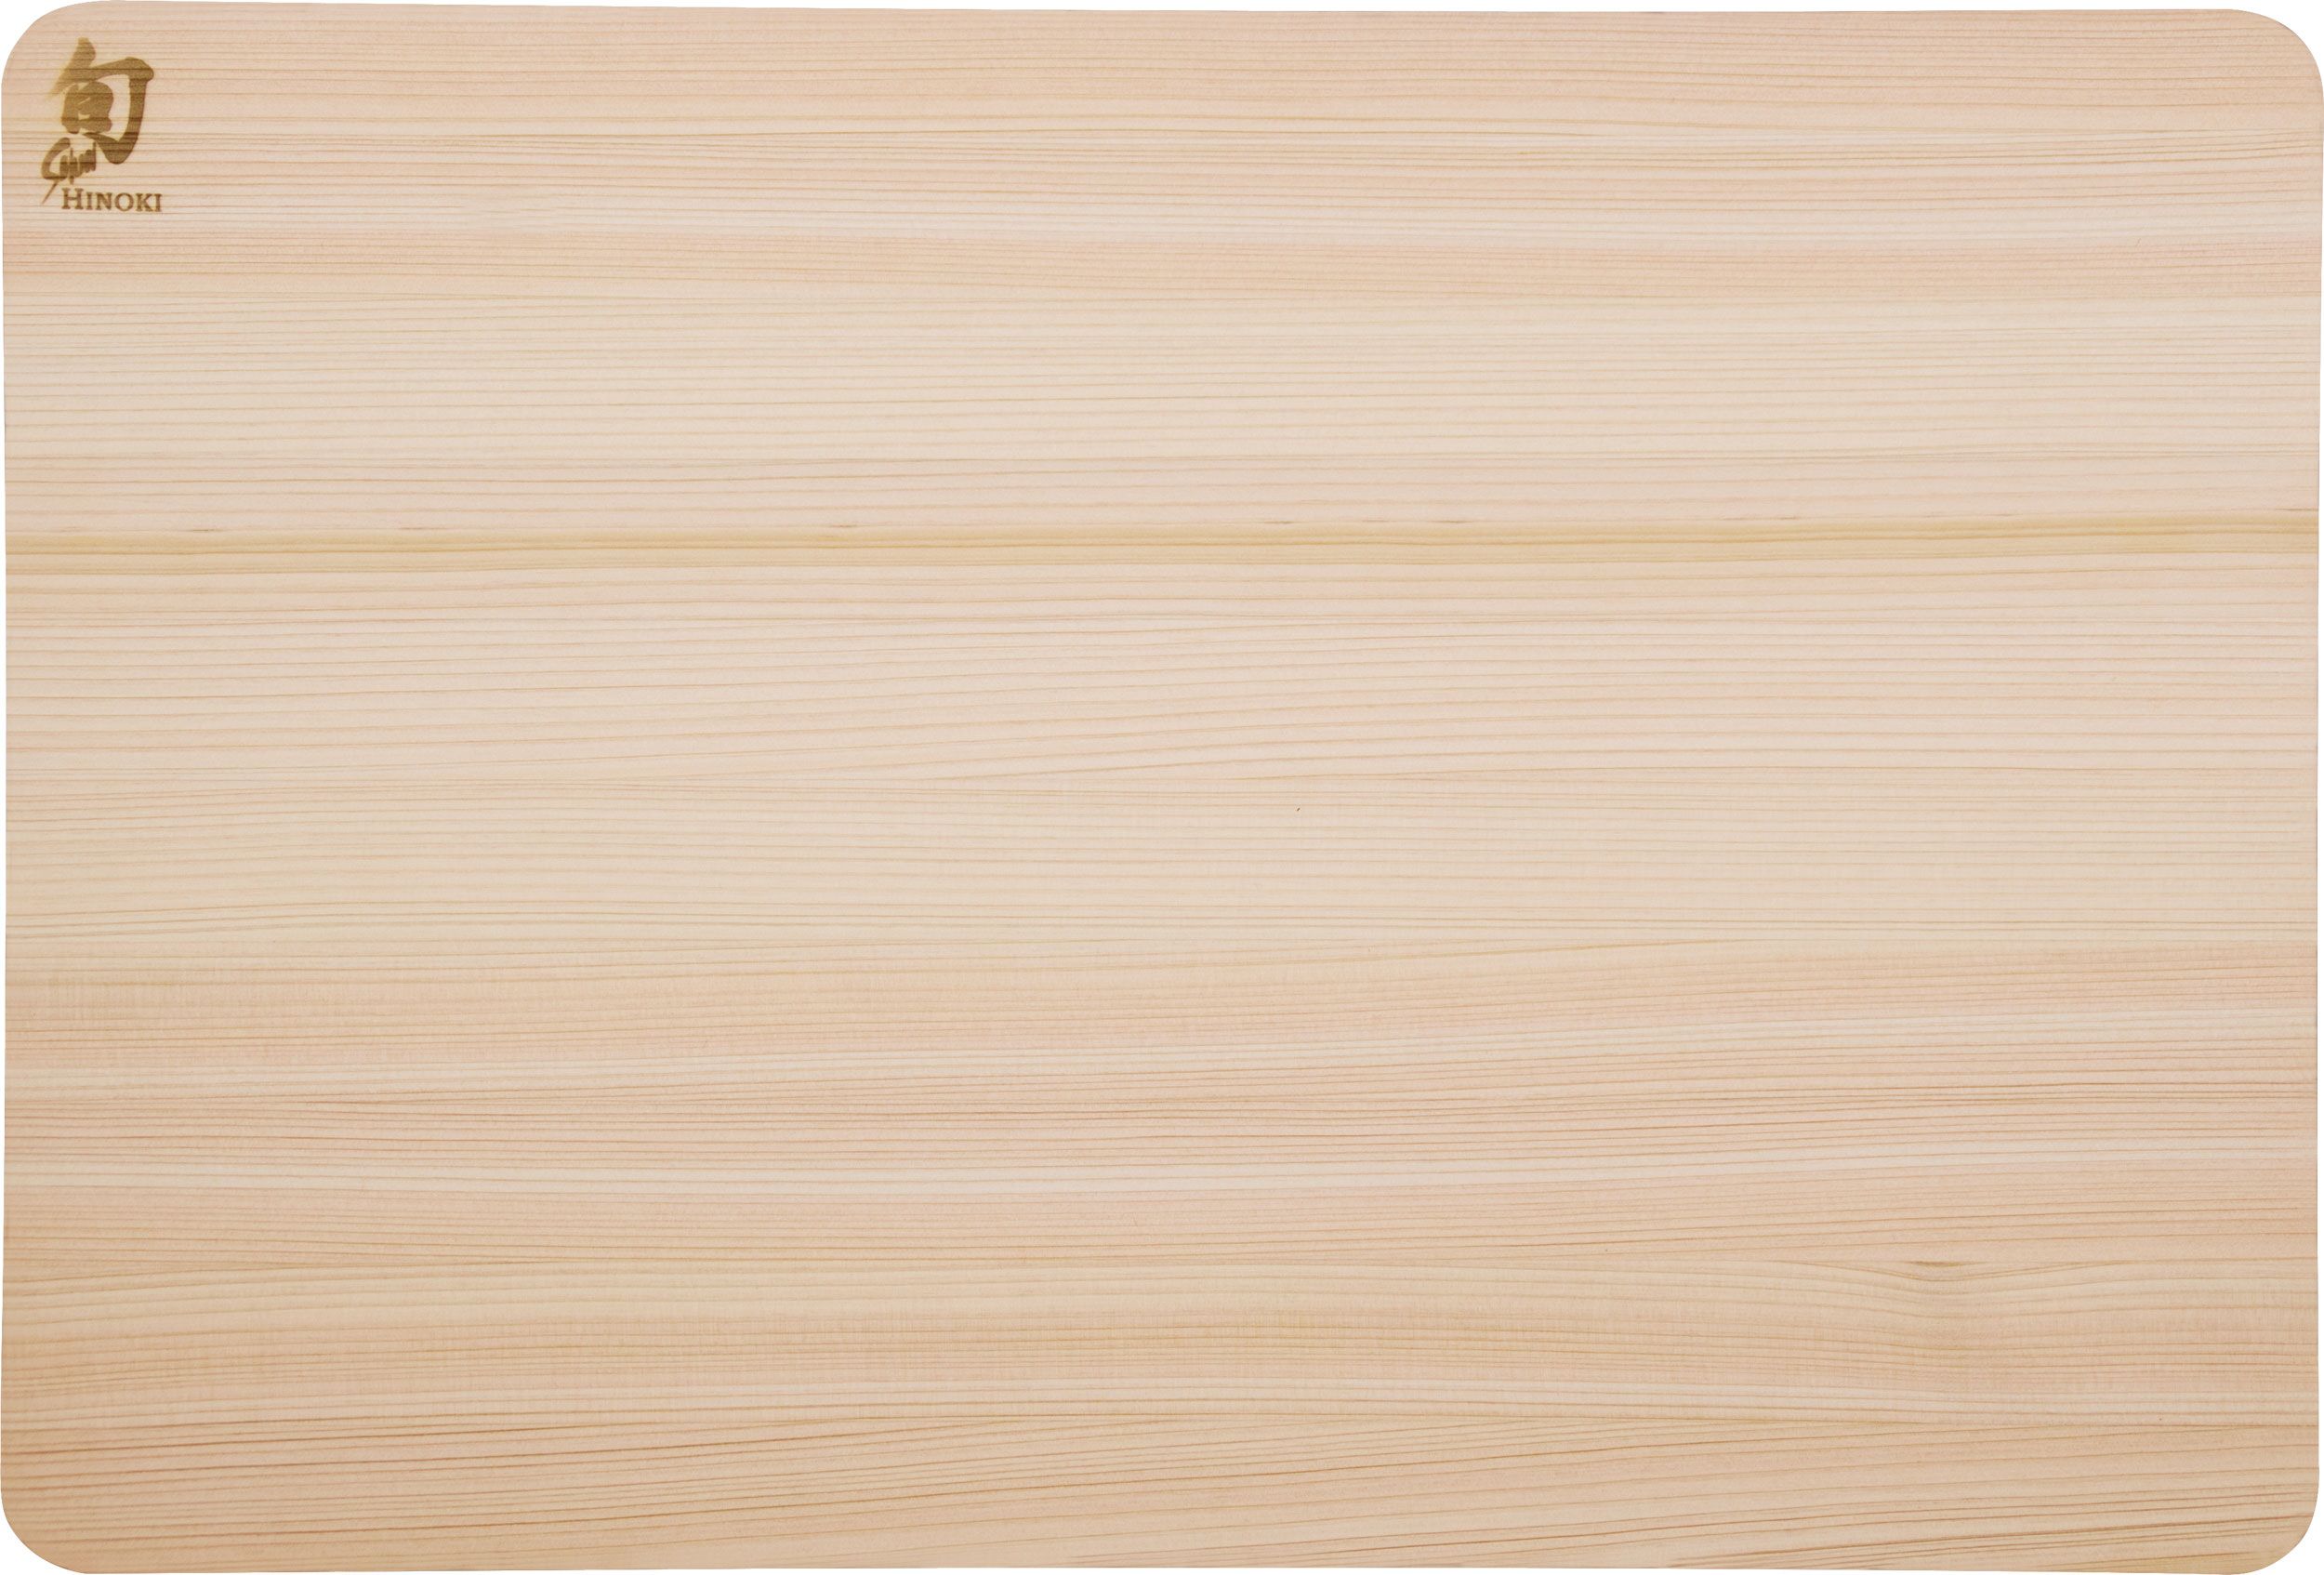 Large Shun Hinoki Cutting Board